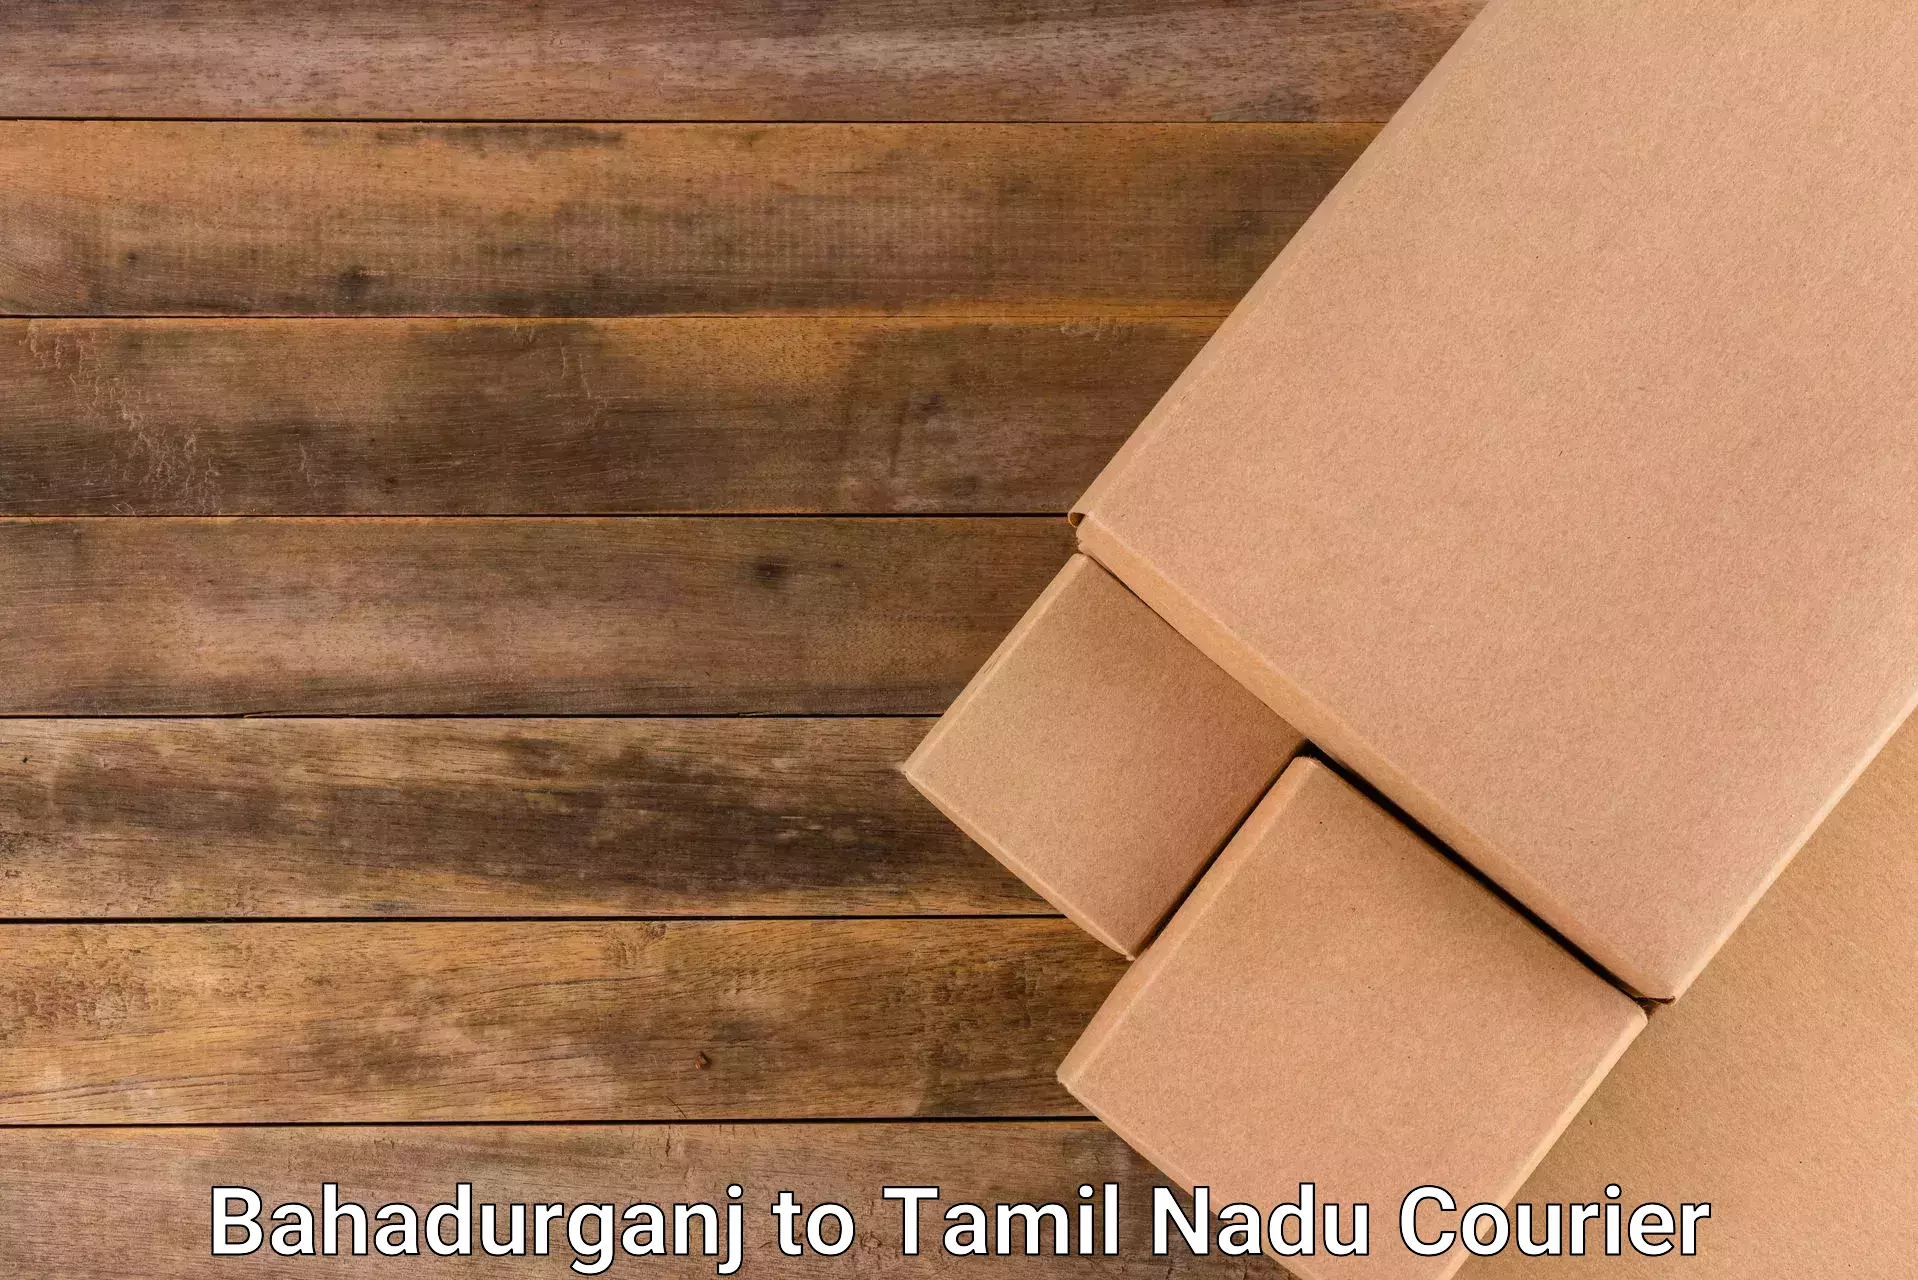 Small business couriers Bahadurganj to Thiruvadanai